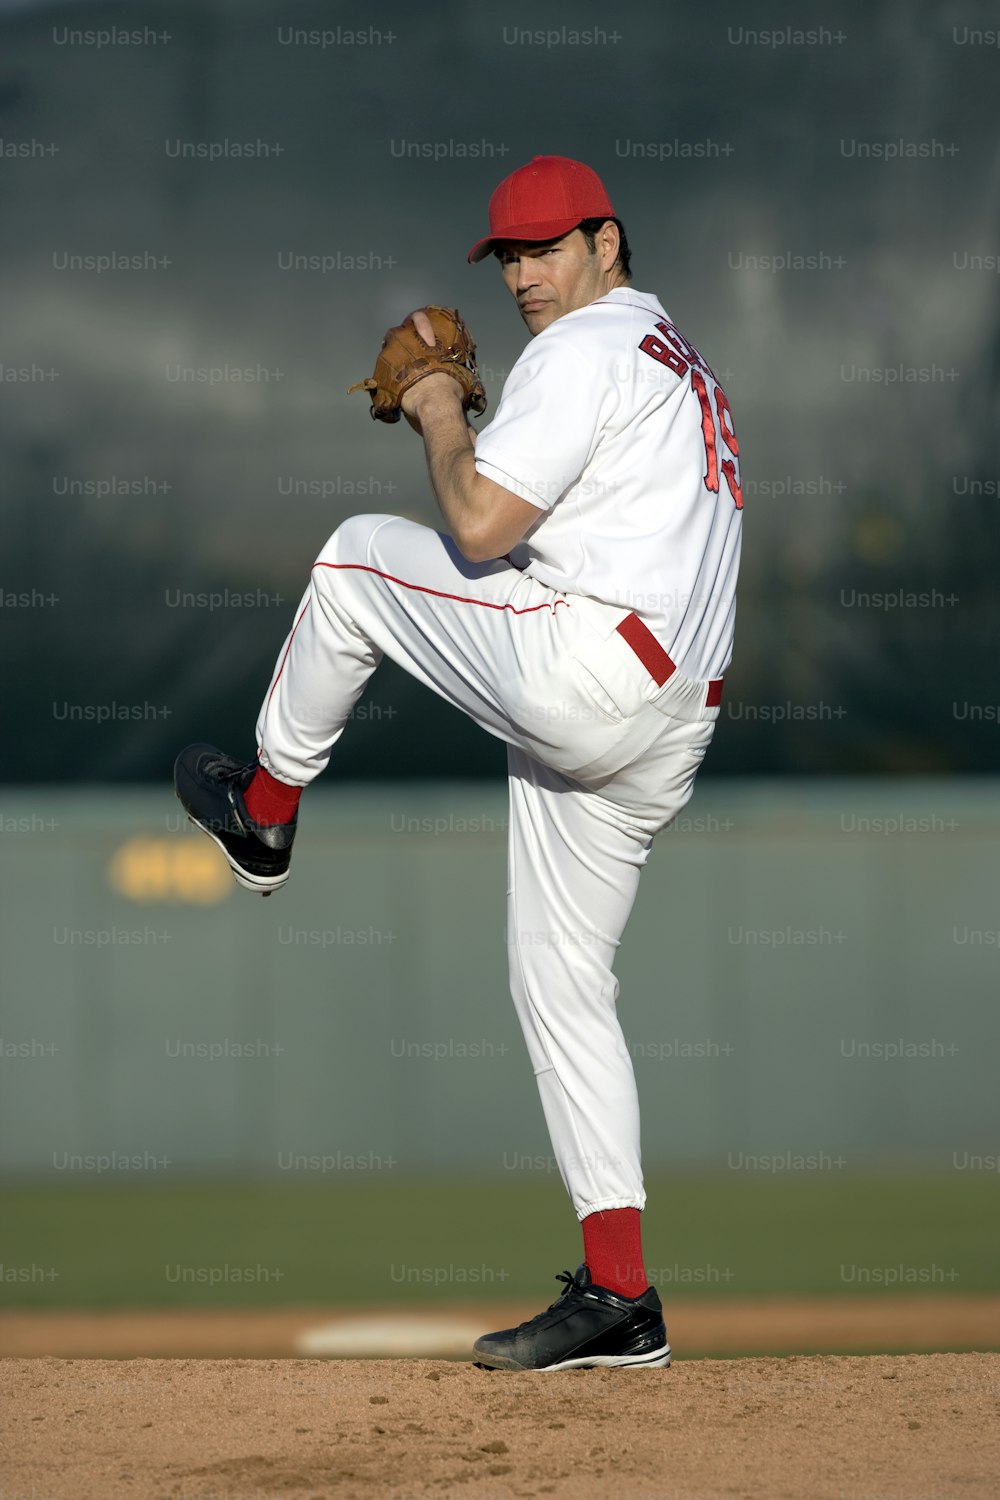 Un uomo in un'uniforme da baseball che lancia una palla da baseball